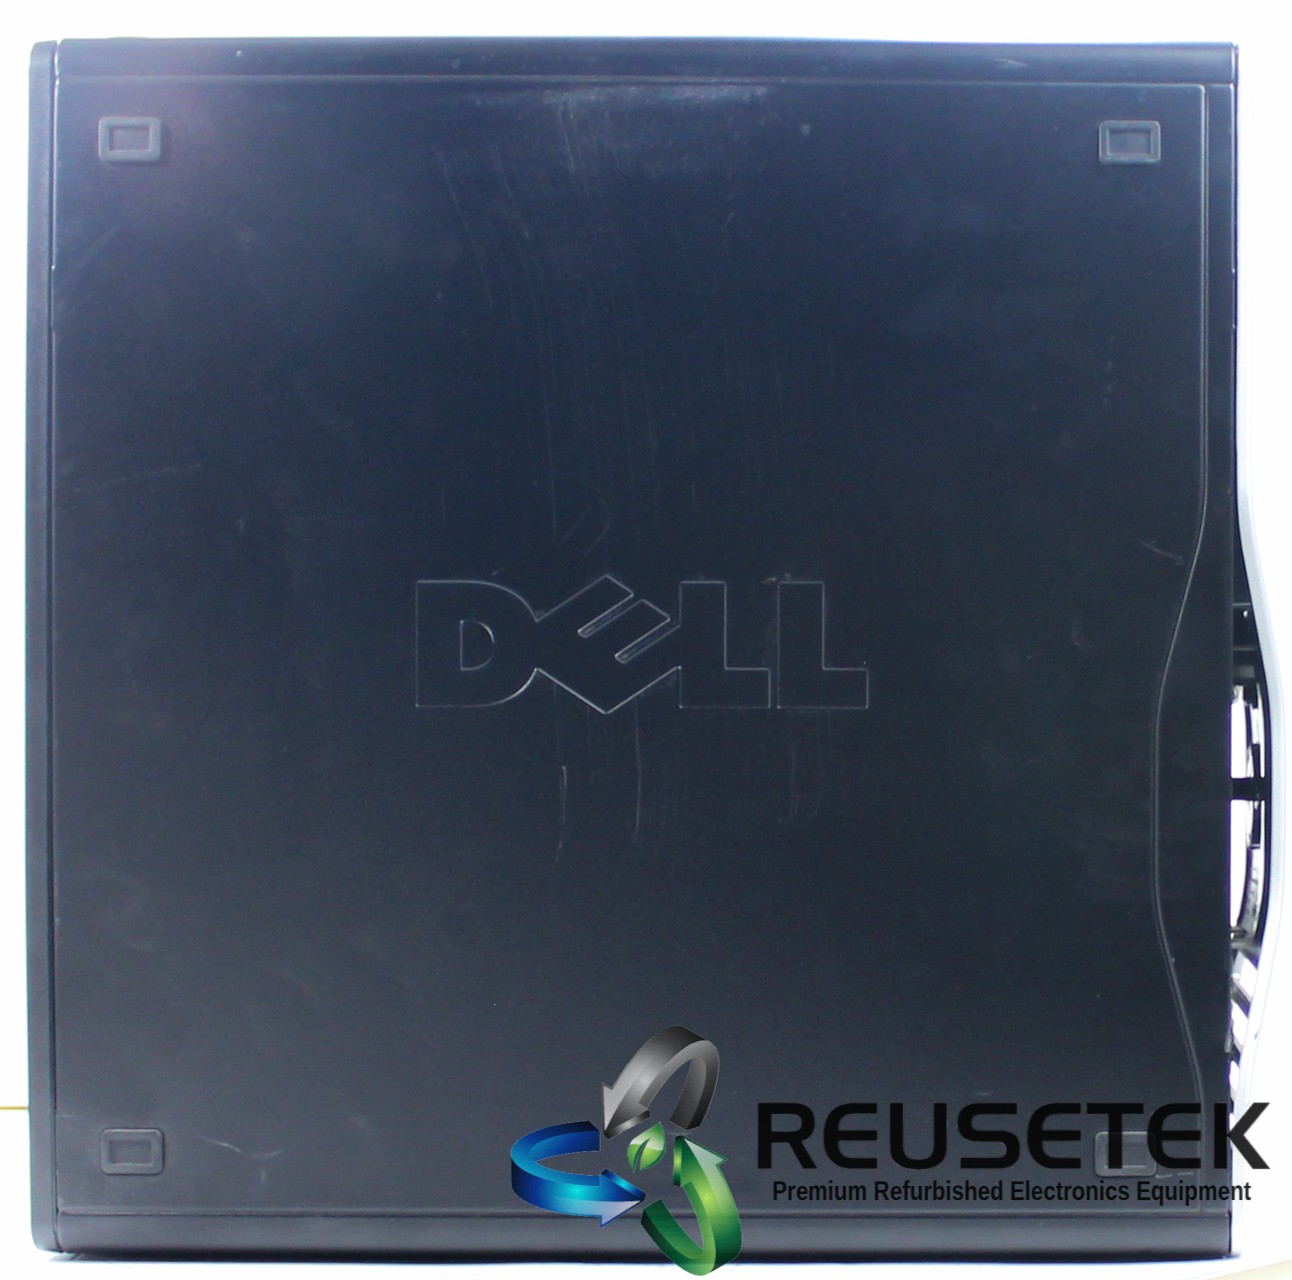 CDH5152-Dell Precision T3500 Workstation Desktop PC w/Xeon W3530 Processor-image